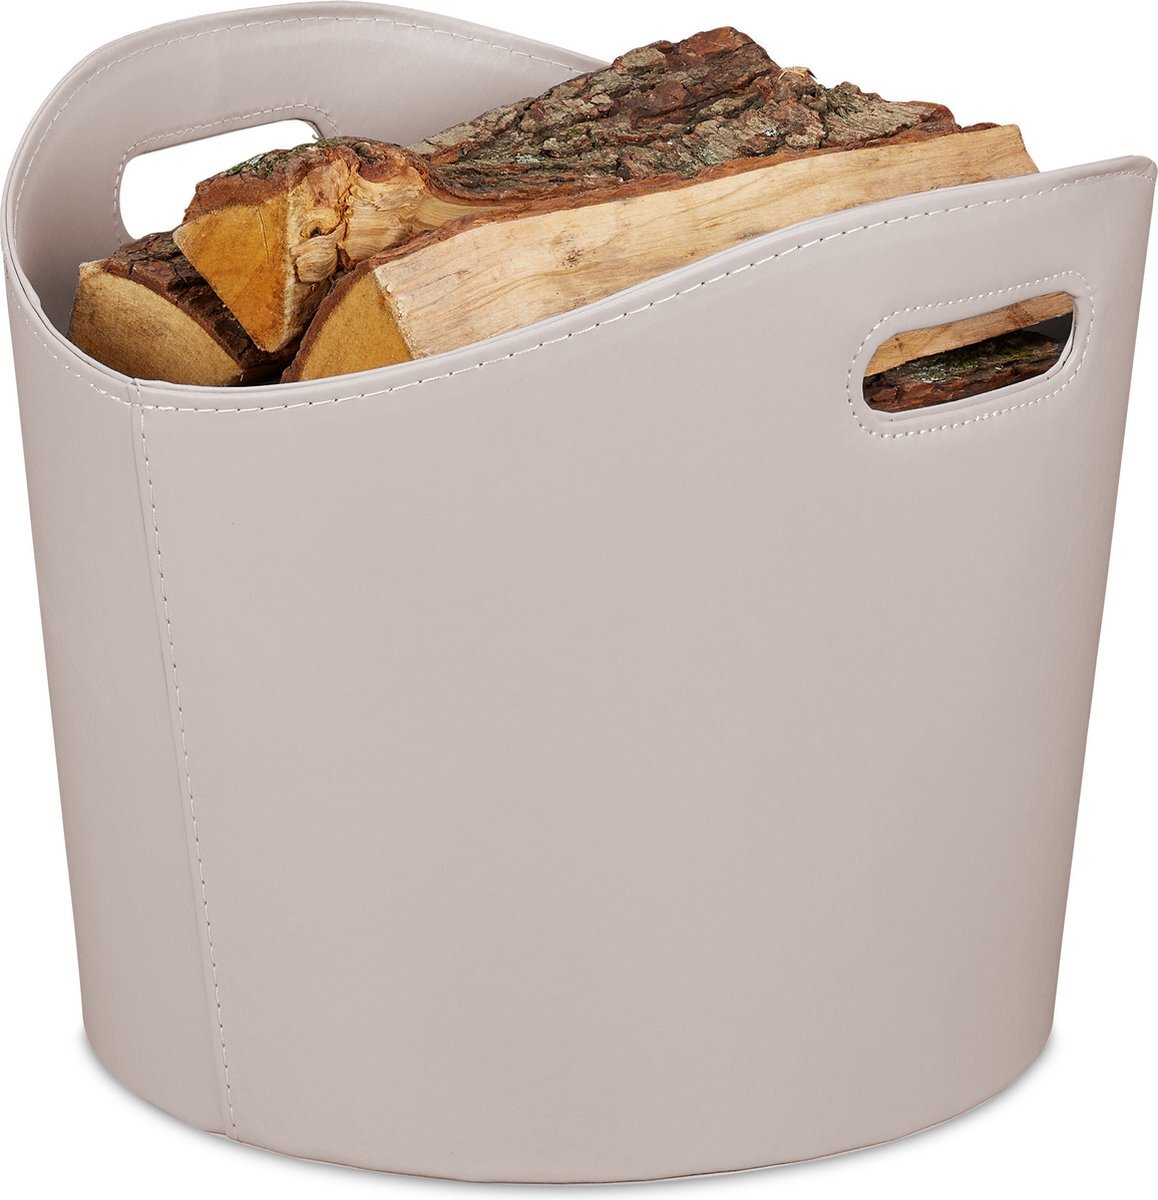 Relaxdays houtmand kunstleer - haardhout opslag - open haard accessoire - brandhout mand